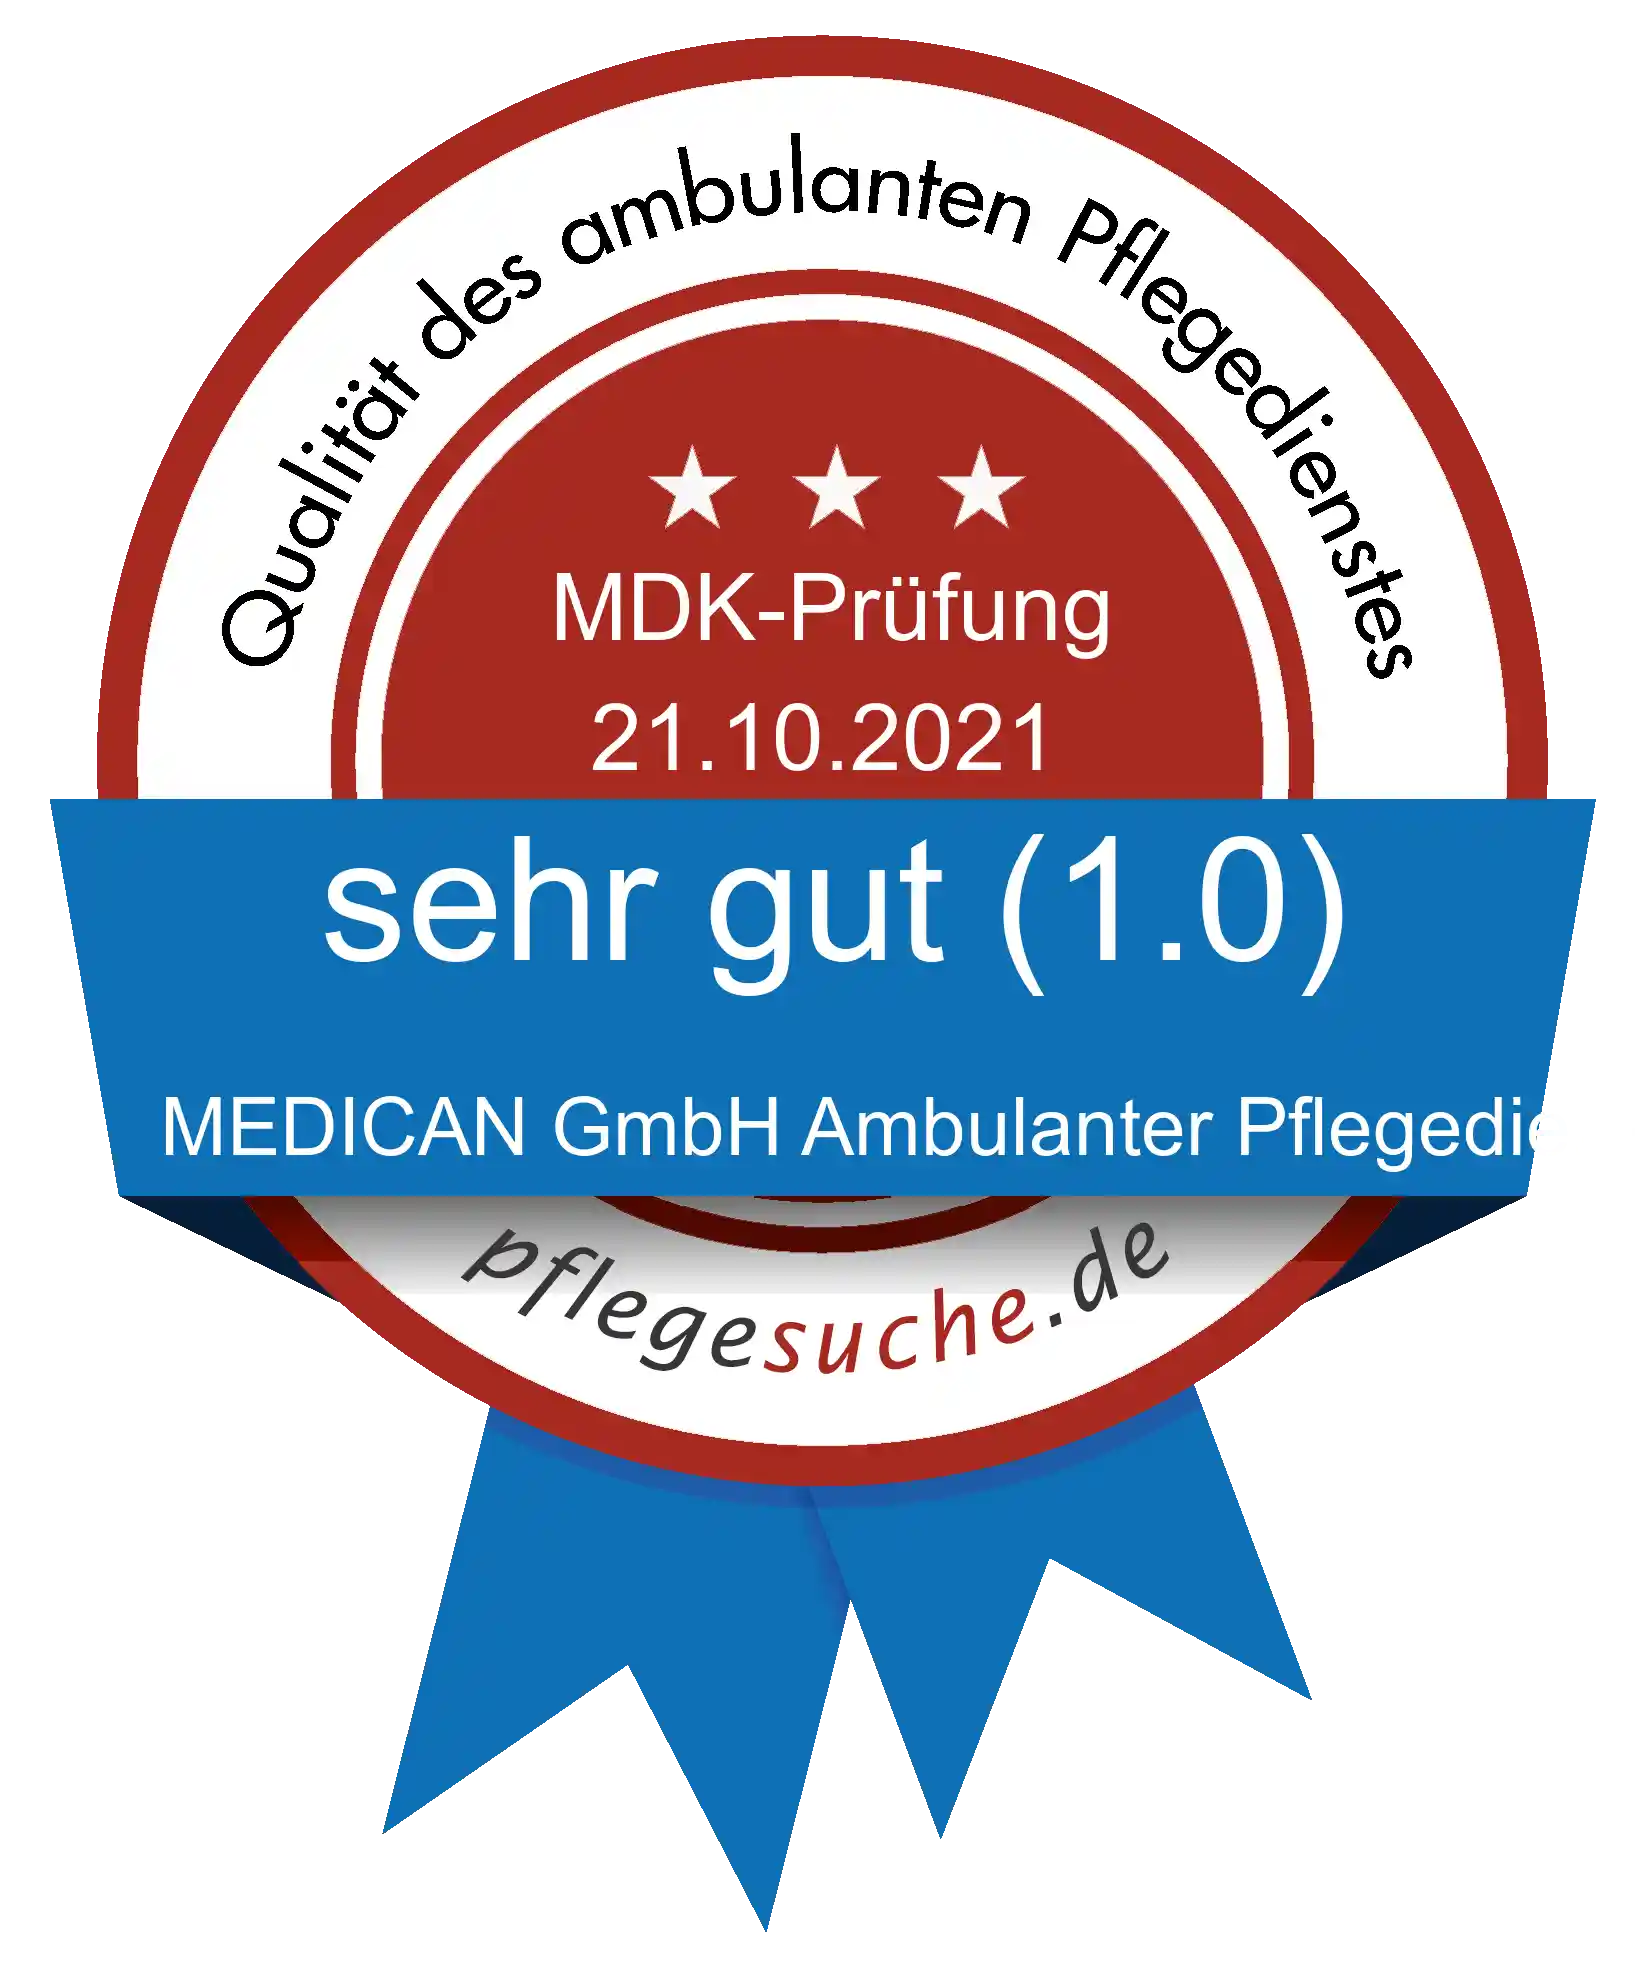 Siegel Benotung: MEDICAN GmbH Ambulanter Pflegedienst